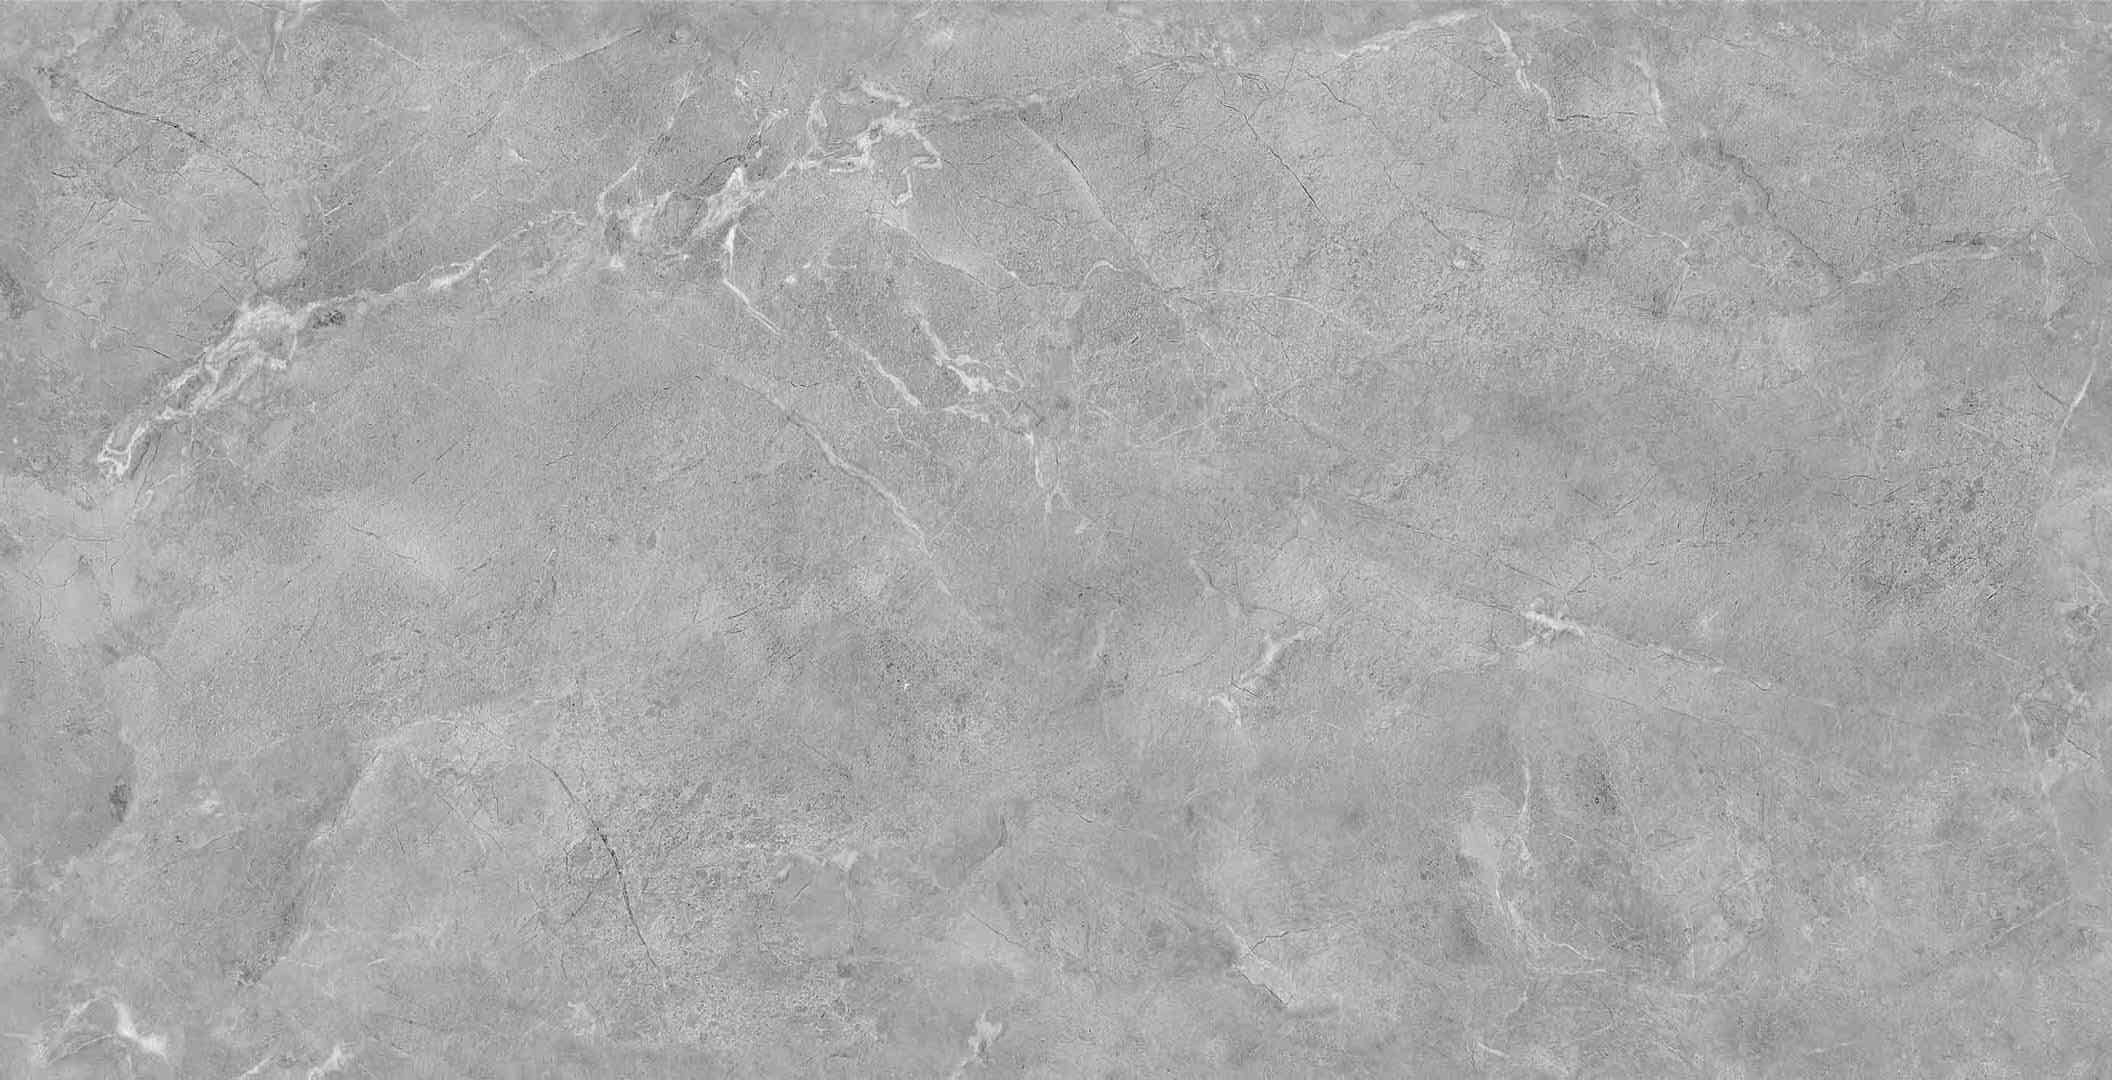 中國佛山瓷磚 China Foshan Marble Tiles Glossy 大理石瓷磚 連紋瓷磚 地磚 牆磚 釉面磚 亮光面 126E6011L波爾圖灰 60×120cm